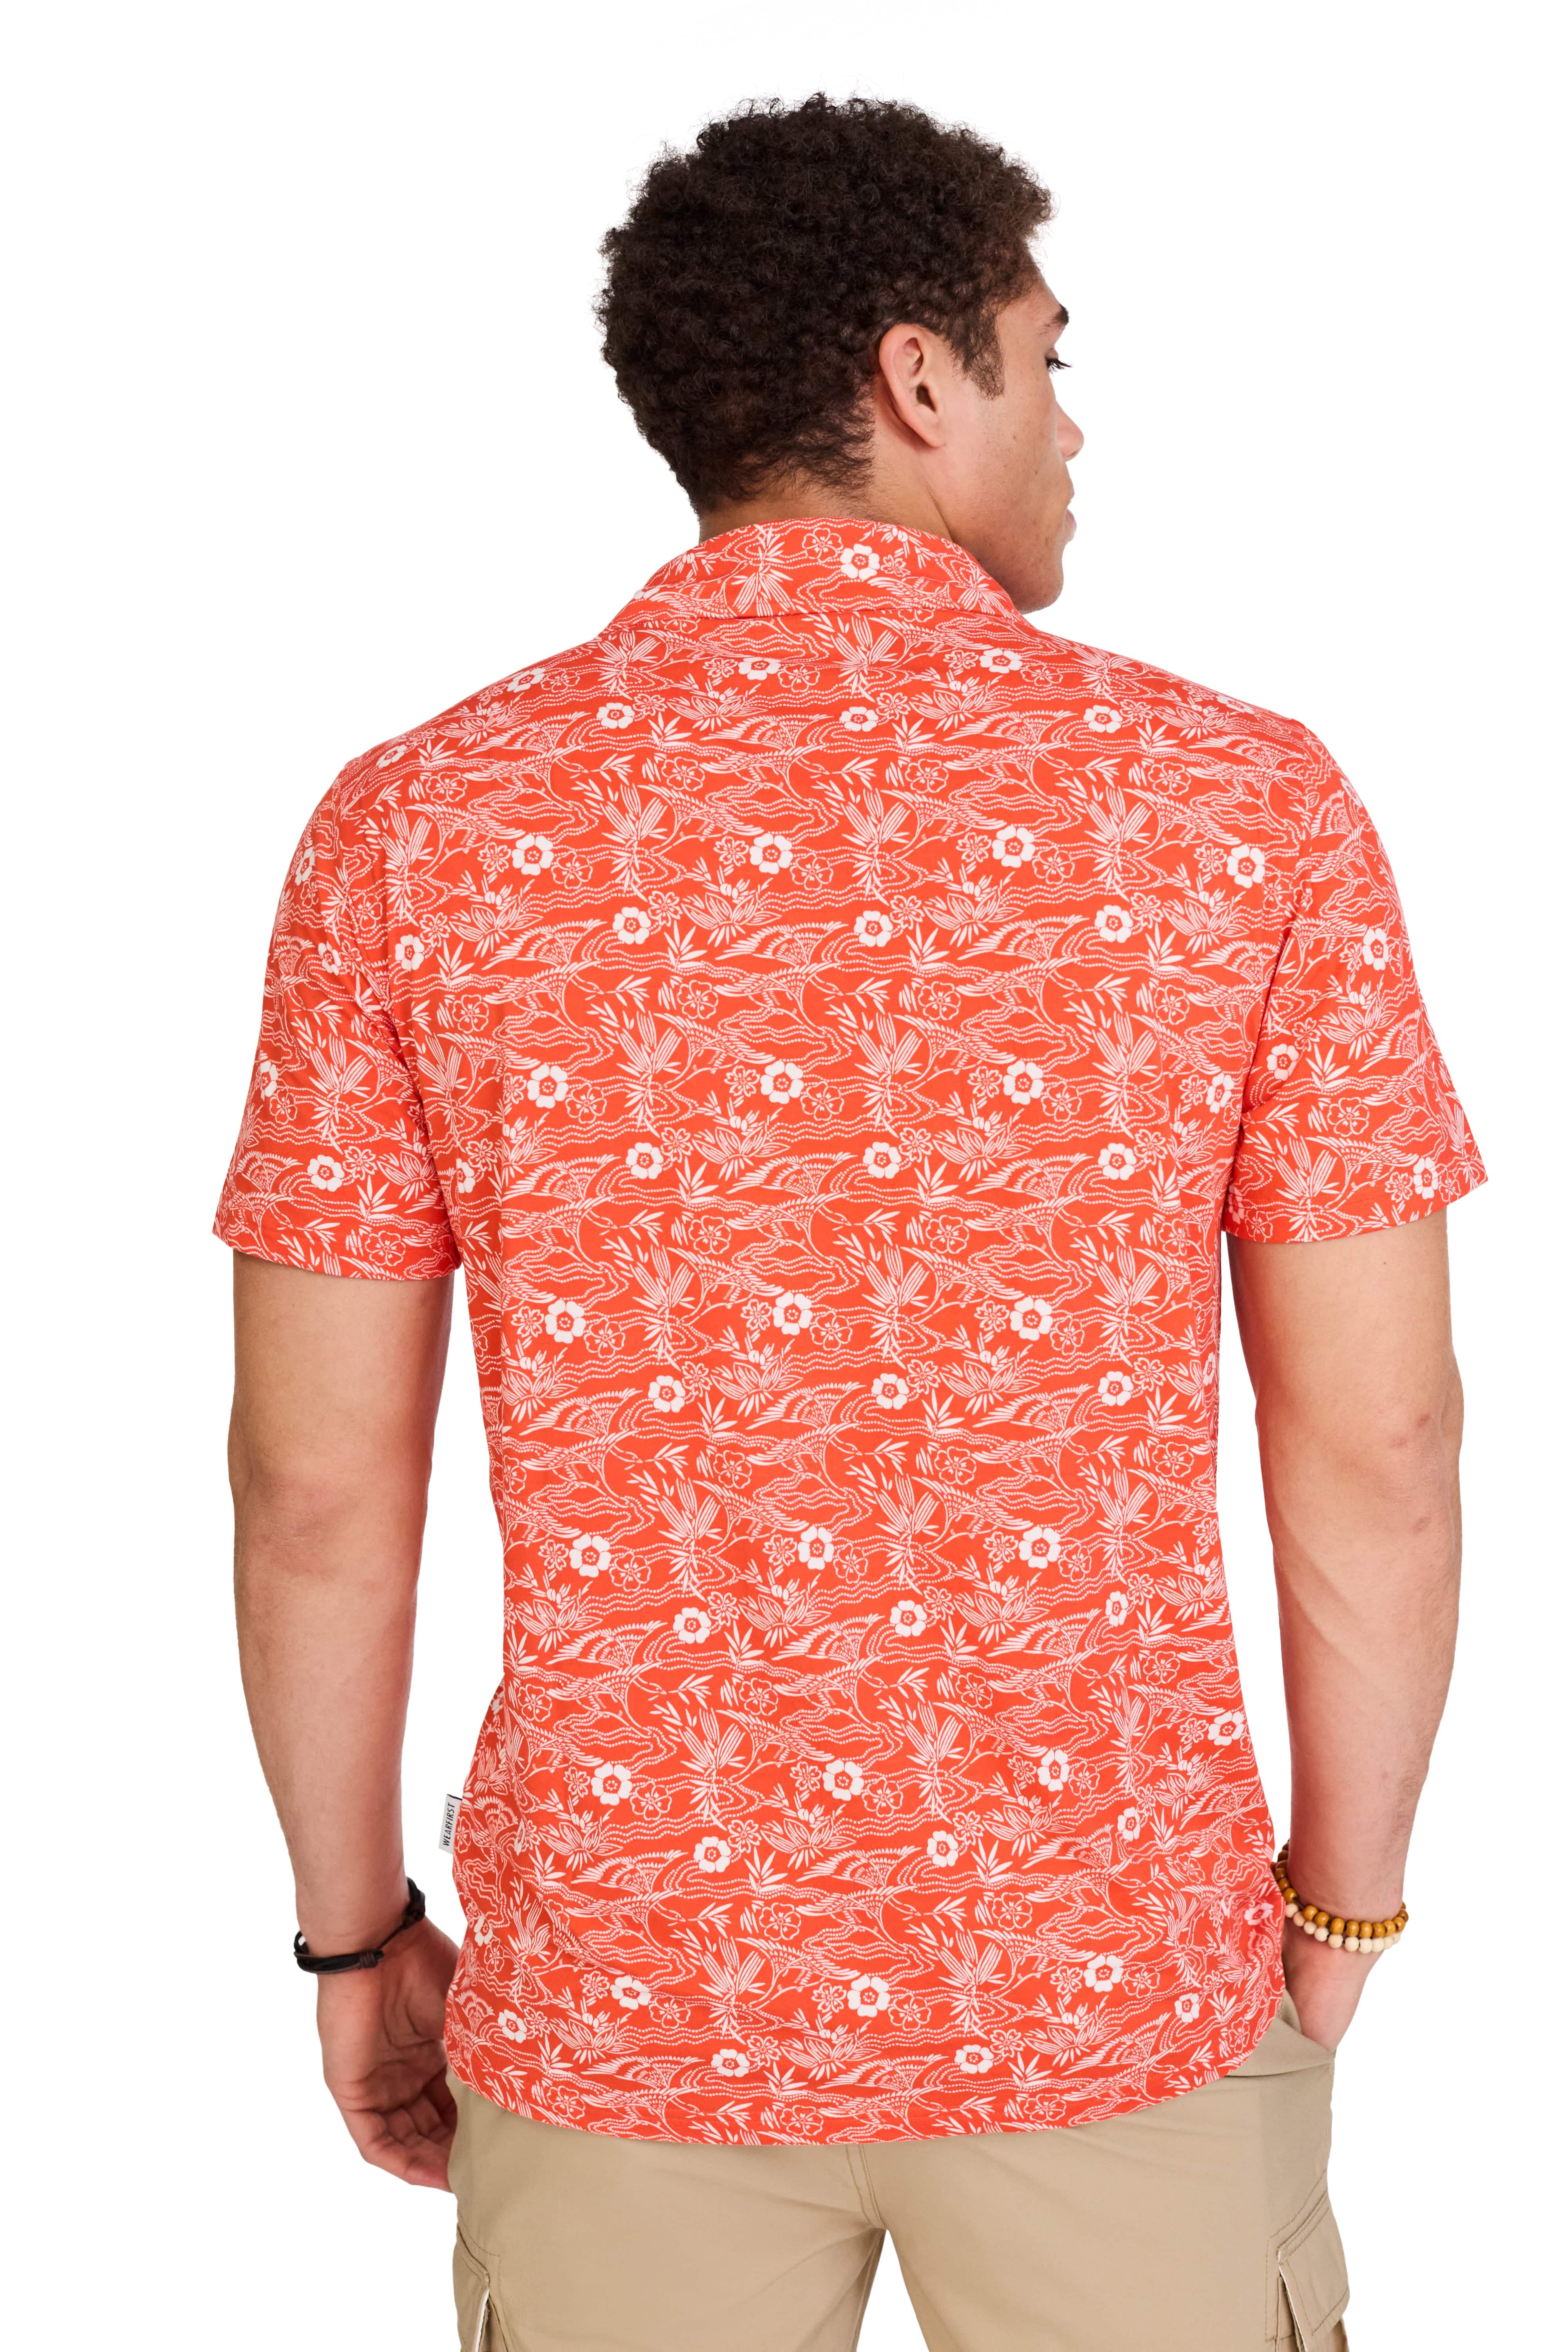 Aloha Short Sleeve Button Up Shirt